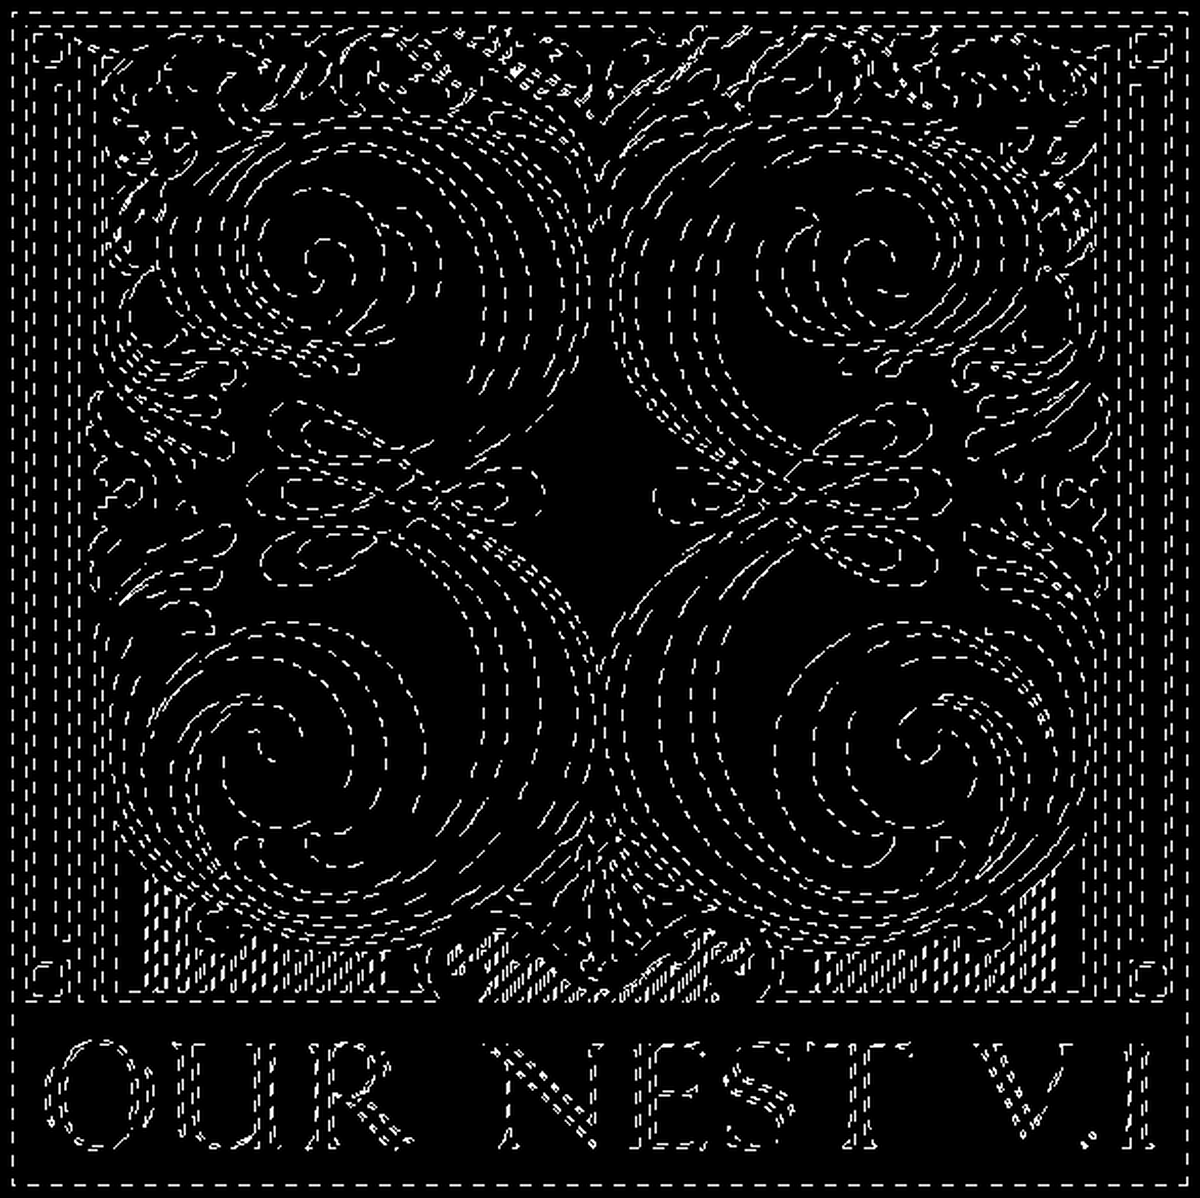 Our-Nest-Vol-1-black